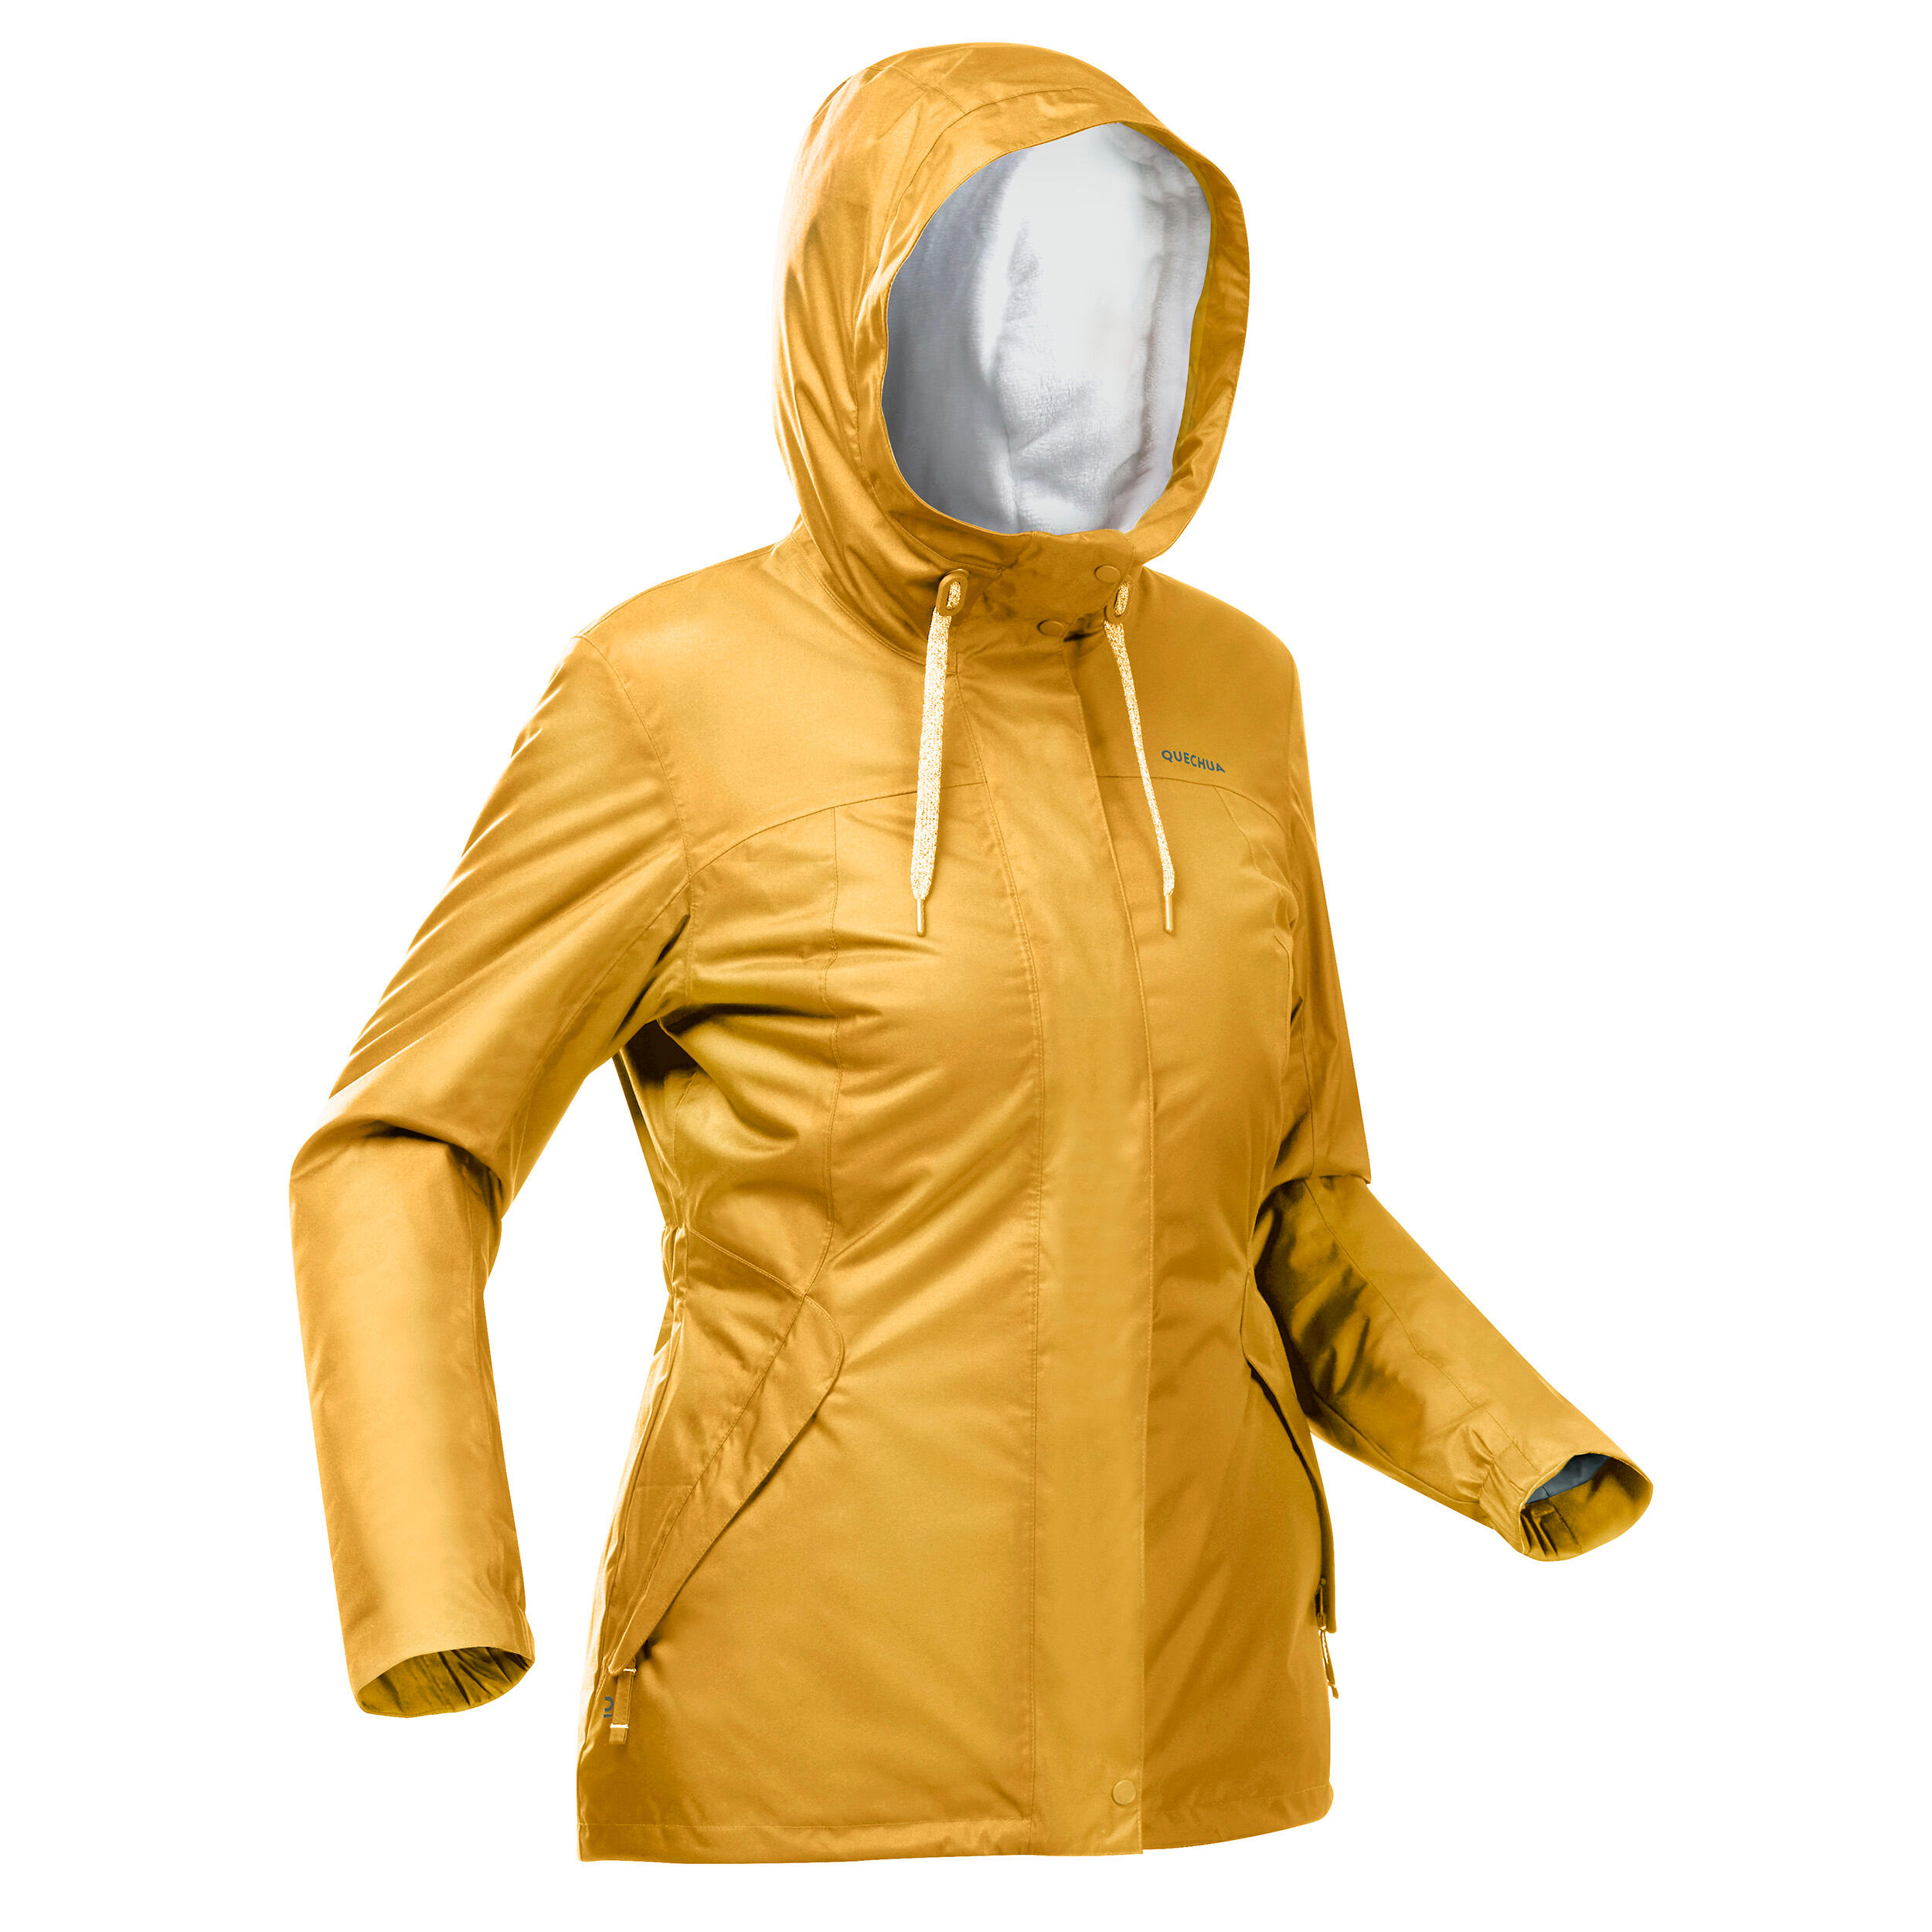 Women’s hiking waterproof winter jacket - SH500 -10°C 4/12